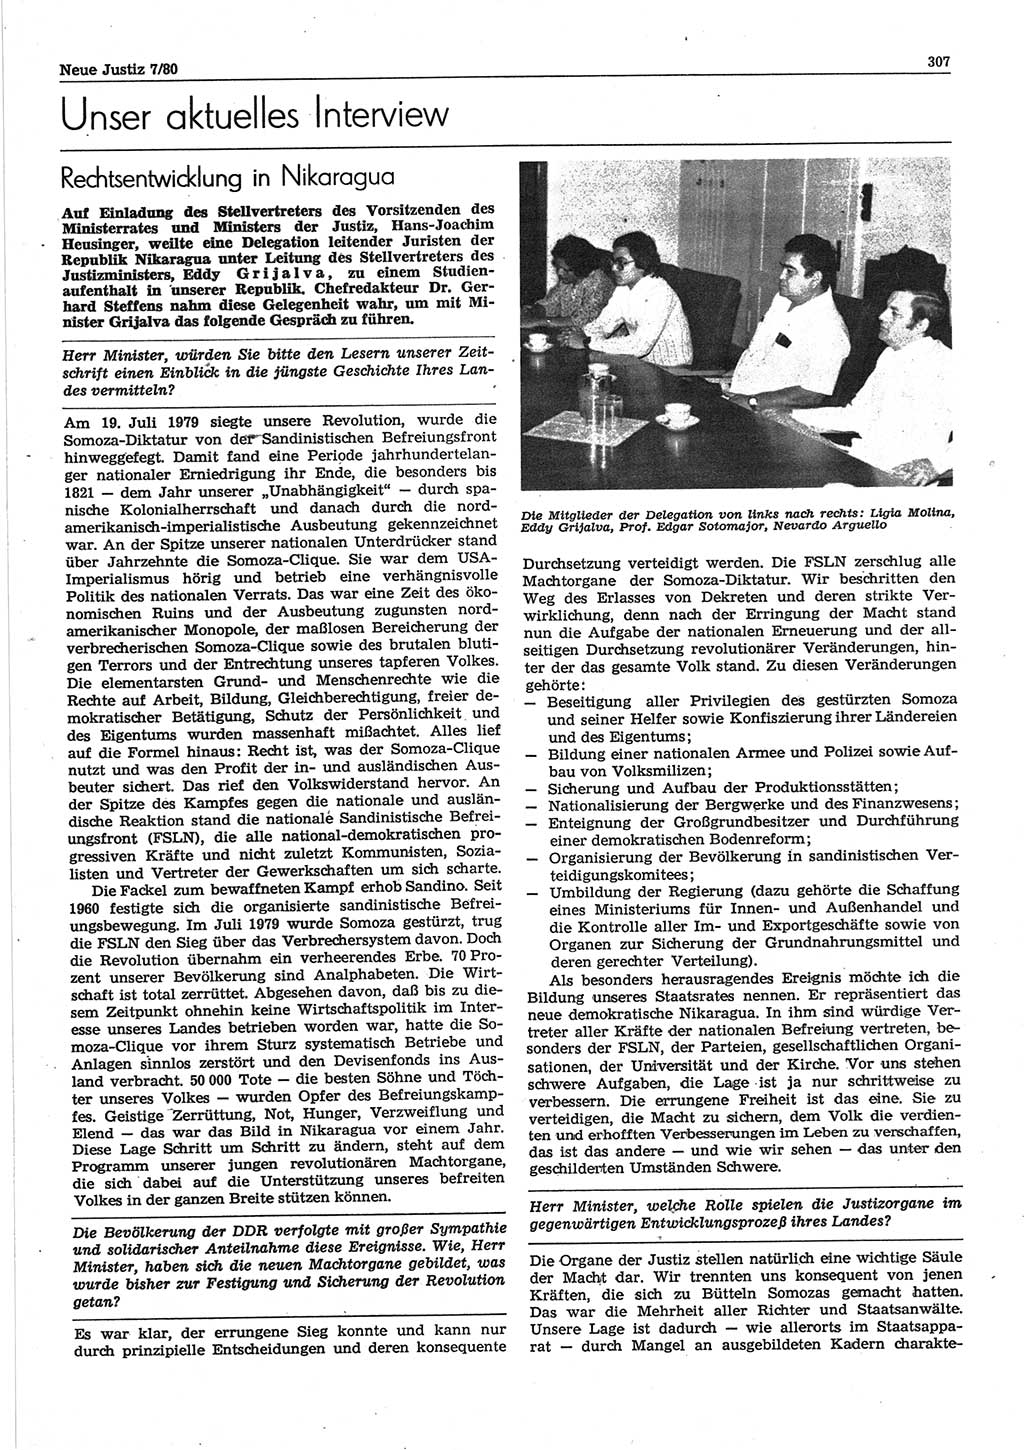 Neue Justiz (NJ), Zeitschrift für sozialistisches Recht und Gesetzlichkeit [Deutsche Demokratische Republik (DDR)], 34. Jahrgang 1980, Seite 307 (NJ DDR 1980, S. 307)